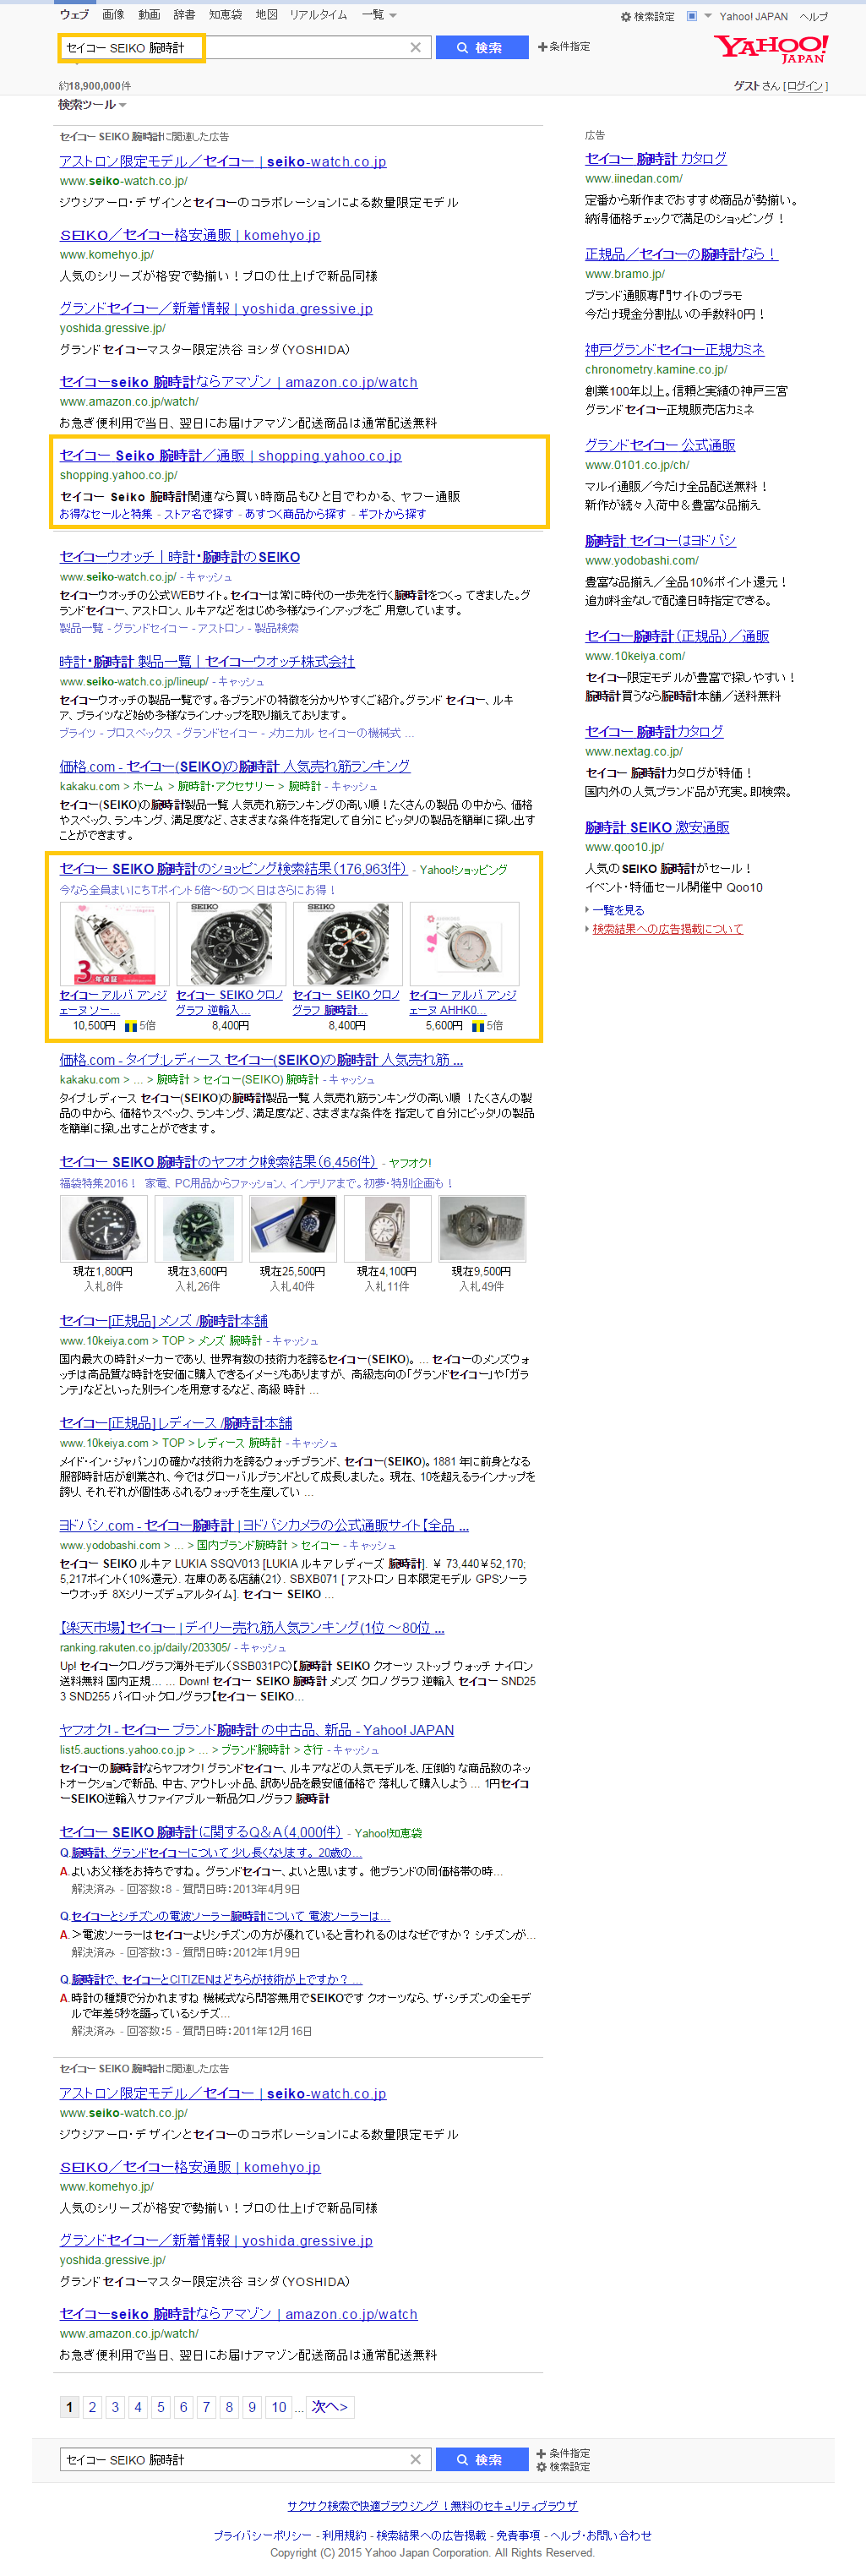 「セイコー SEIKO 腕時計」の検索結果   Yahoo 検索_12_25.png